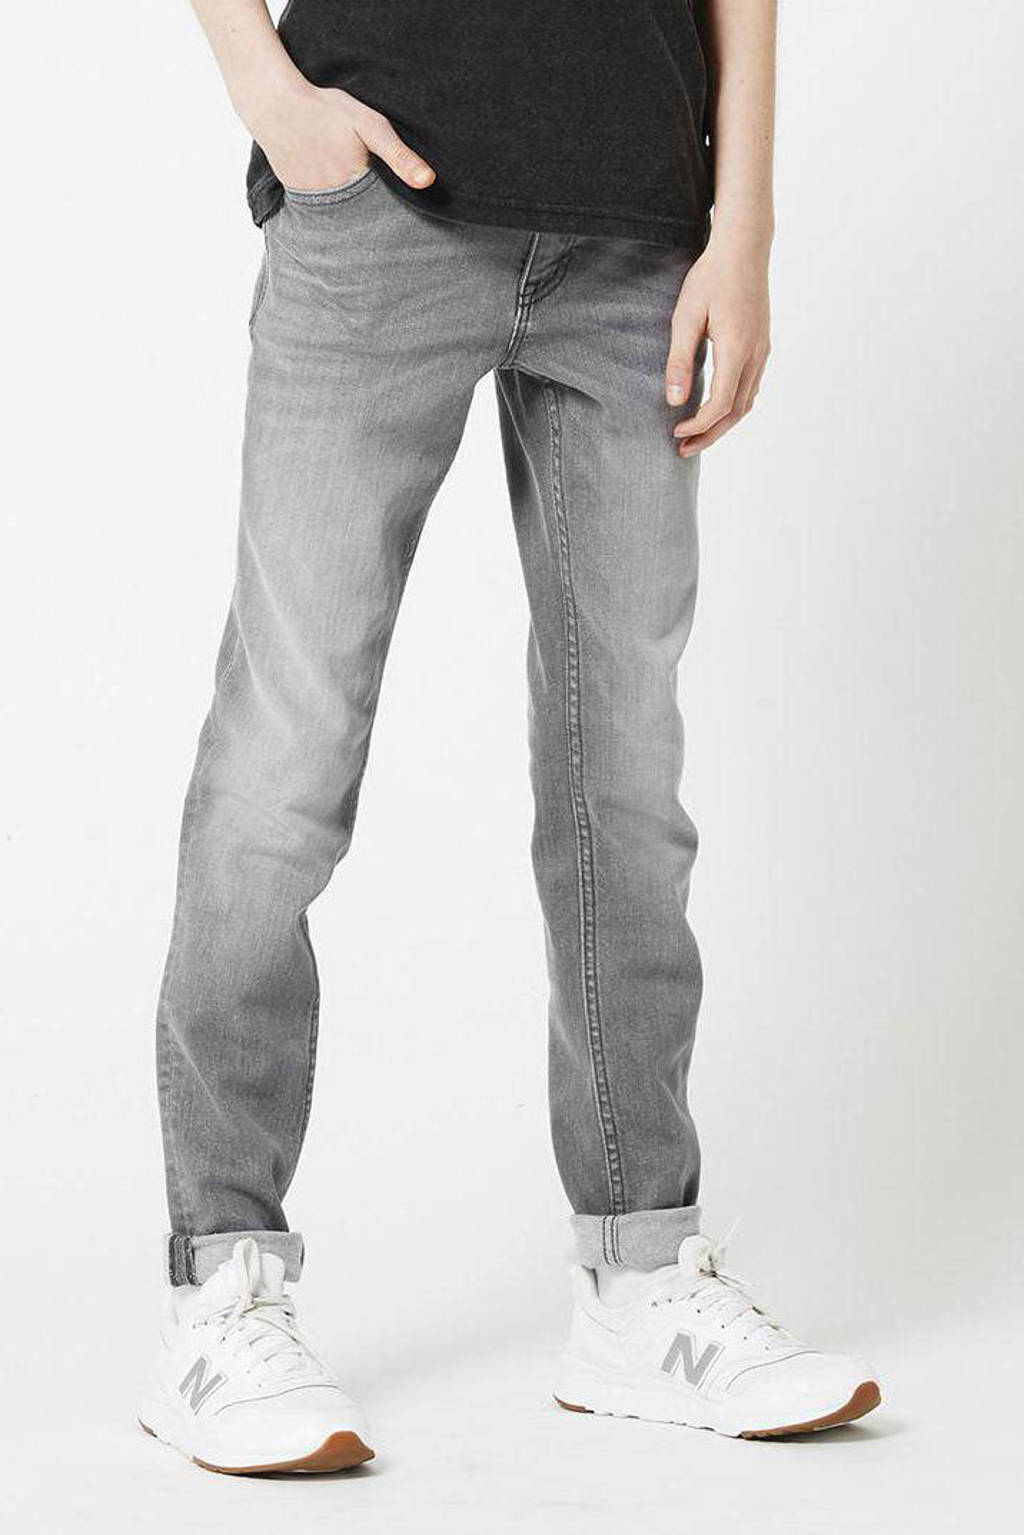 Grijze jongens America Today Junior skinny jeans Keanu steel van stretchdenim met ritssluiting